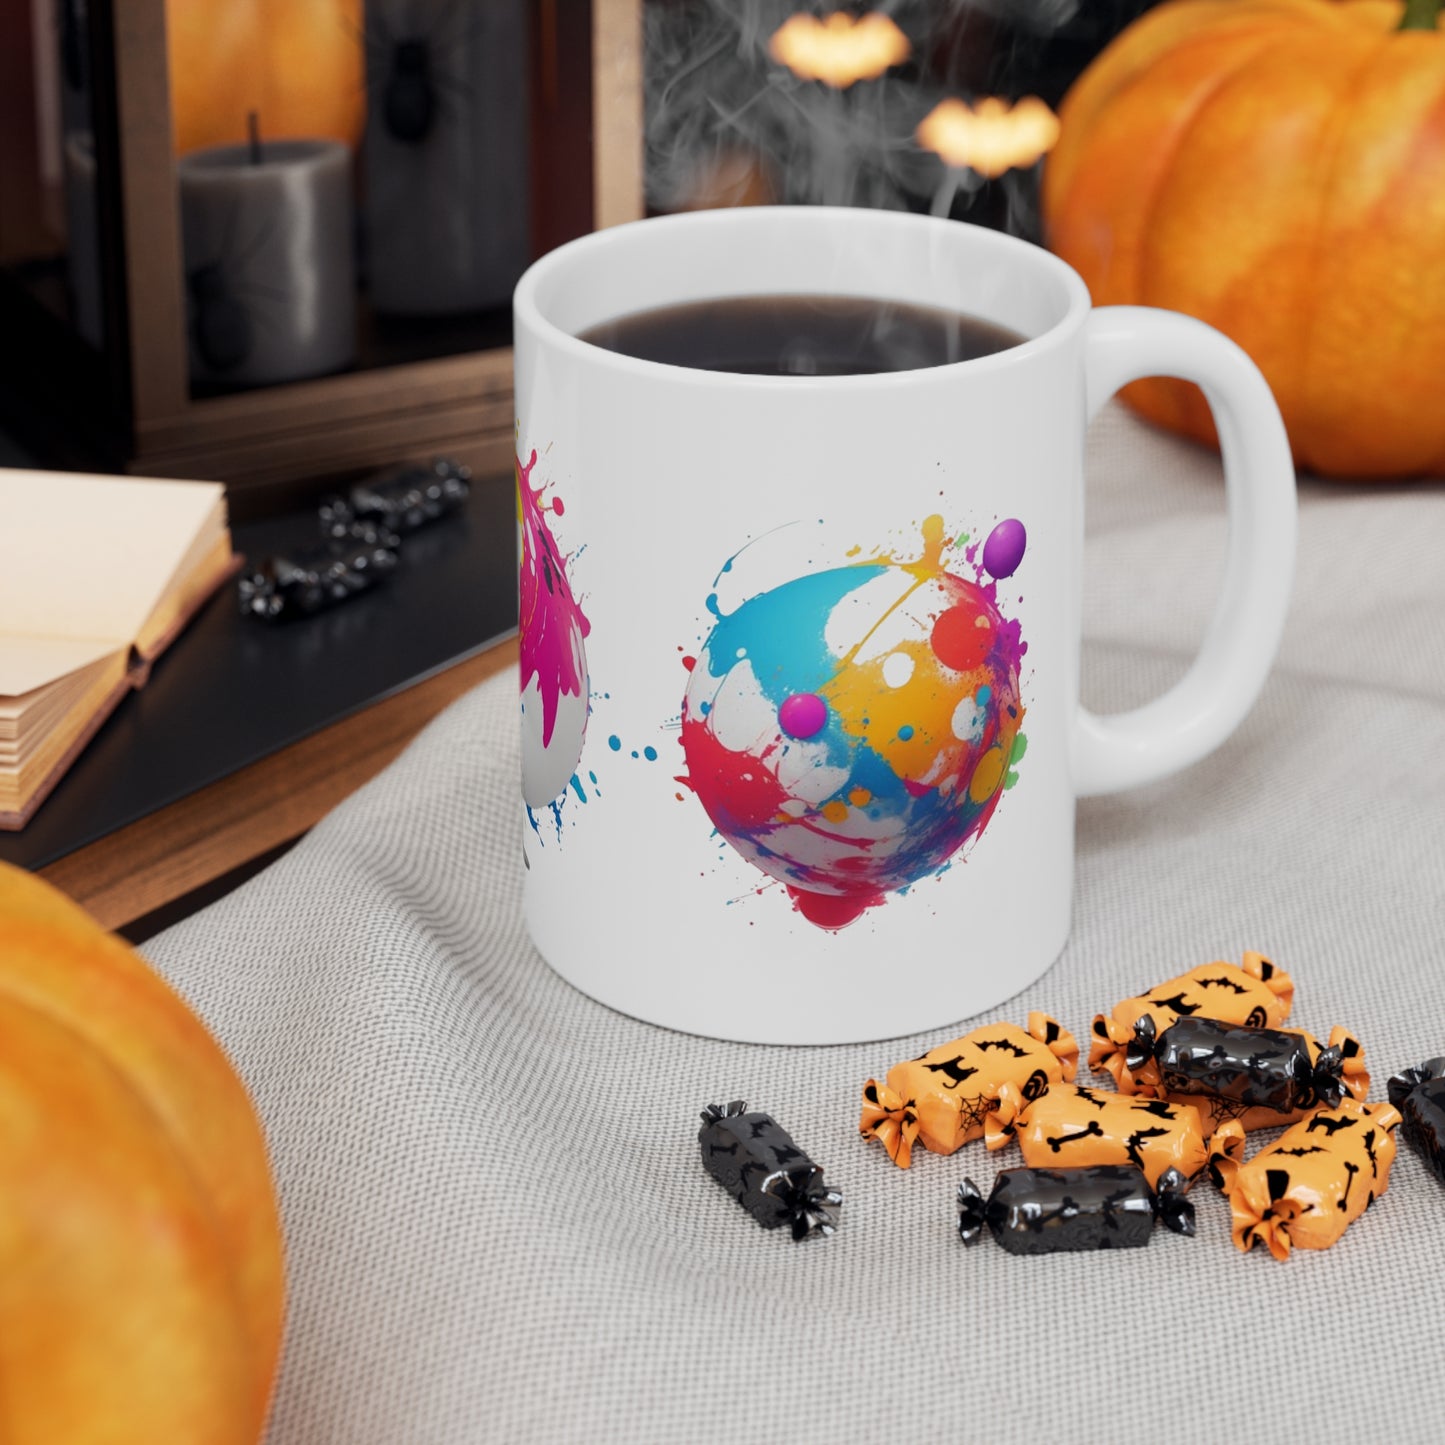 Colourful Messy Ball Art Mug - Ceramic Coffee Mug 11oz